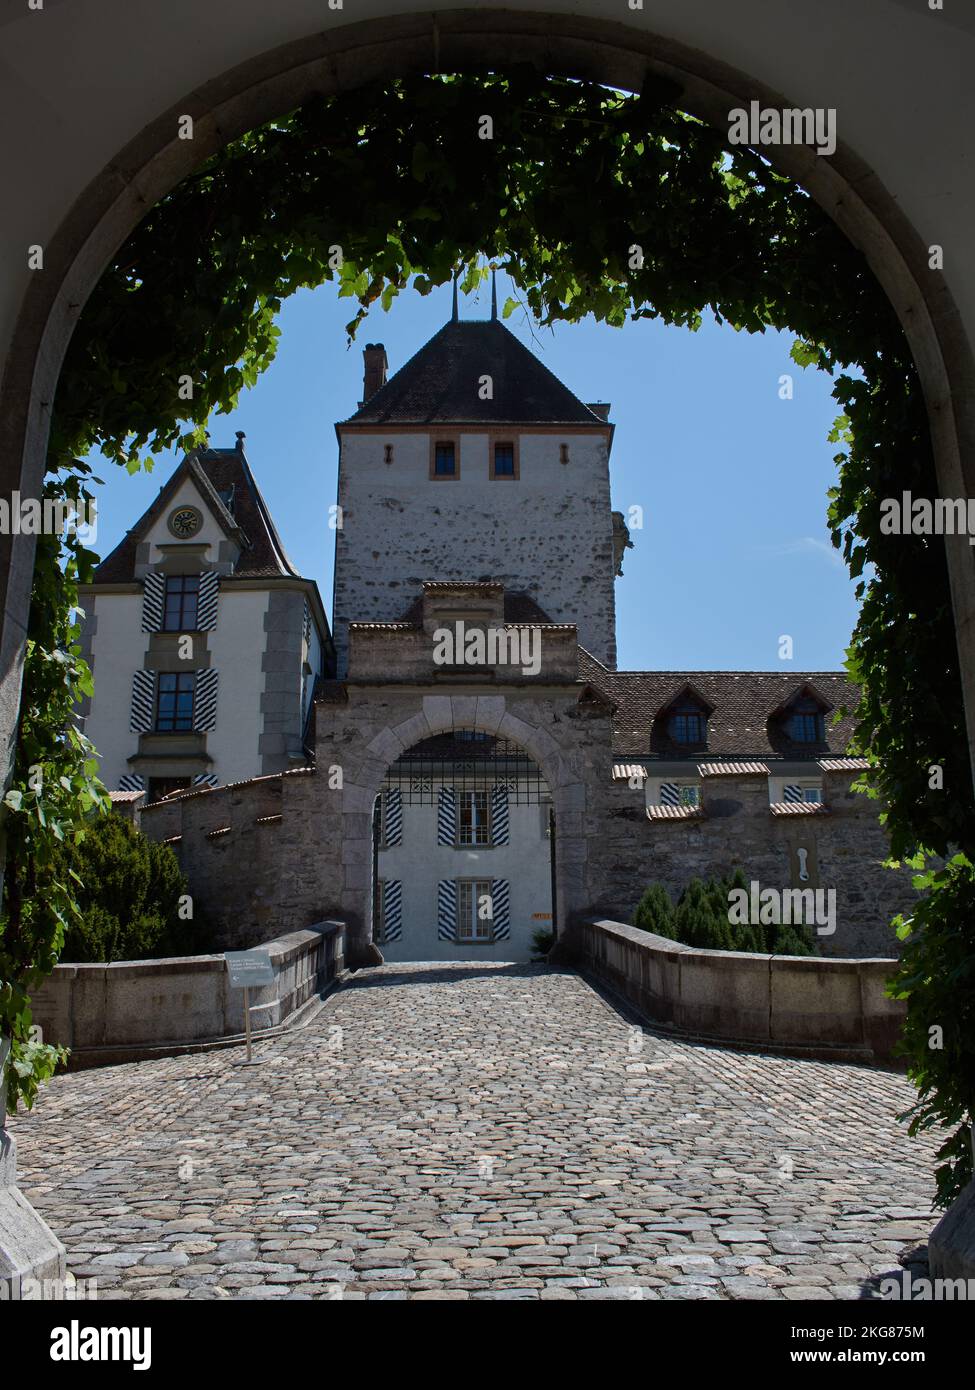 Oberhofen Castle, Svitzerland Landscapes Stock Photo